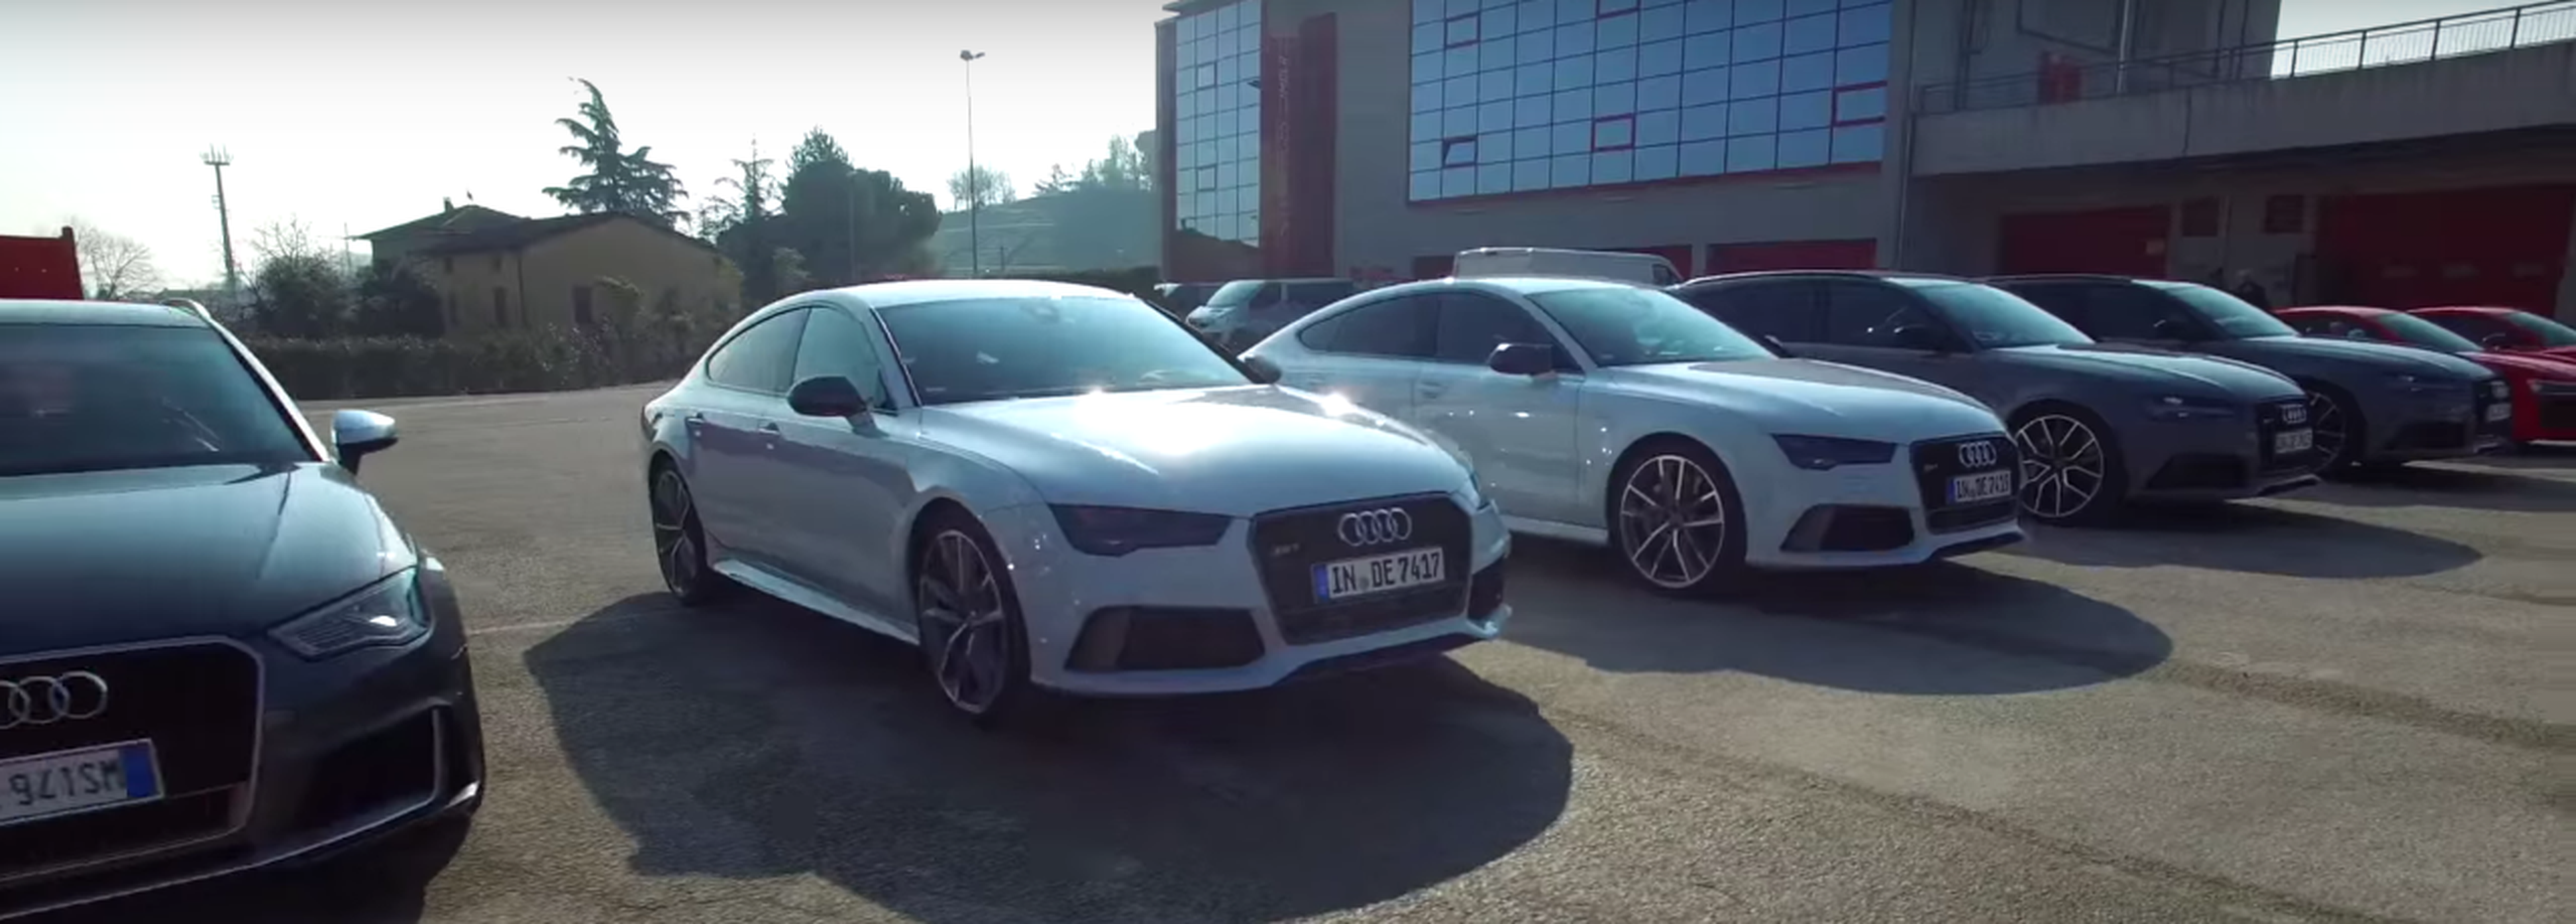 La gama RS de Audi a la conquista del mítico Imola